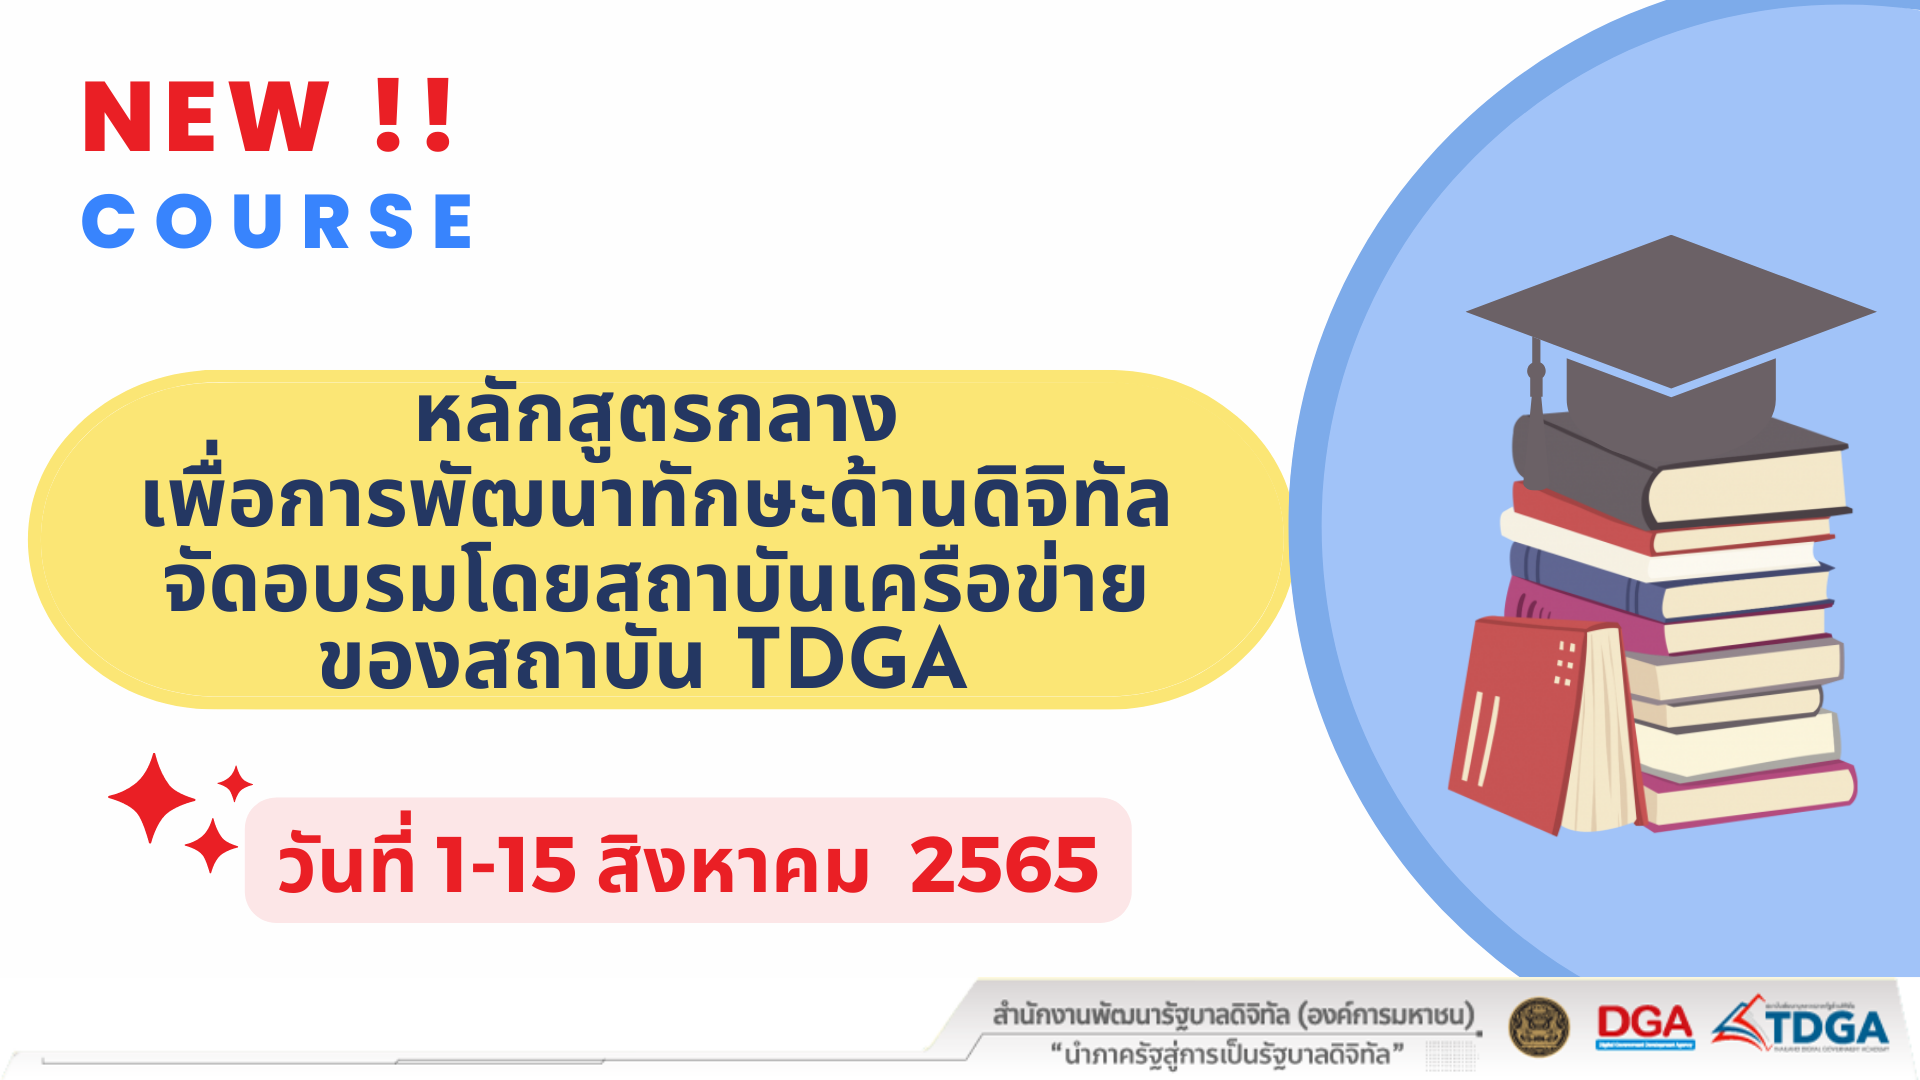 สถาบัน TDGA แนะนำหลักสูตรกลางเพื่อการพัฒนาทักษะด้านดิจิทัลฯ วันที่ 1 -15 สิงหาคม 2565